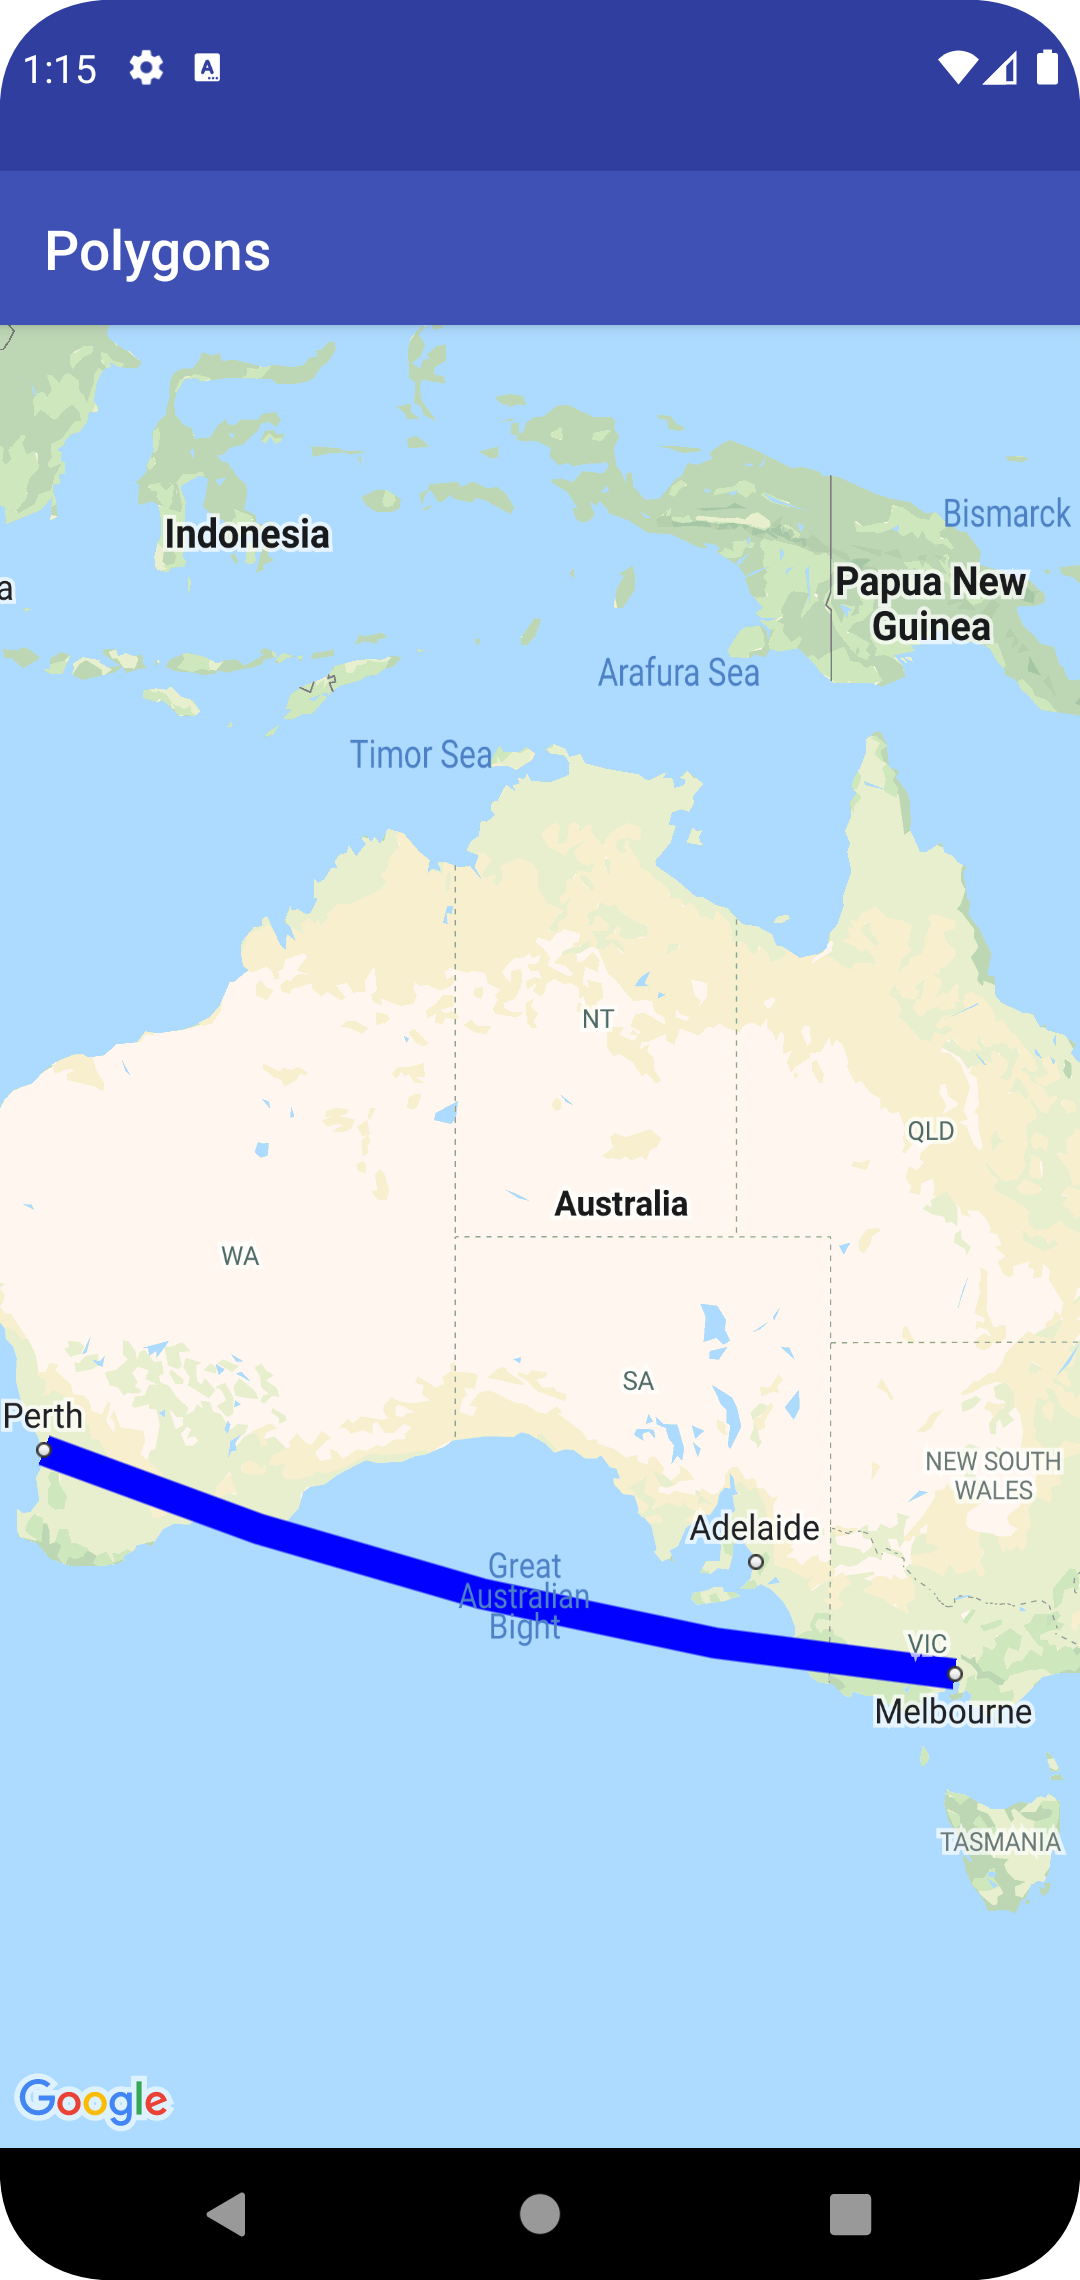 멜버른에서 퍼스까지의 다중선이 있는 지도